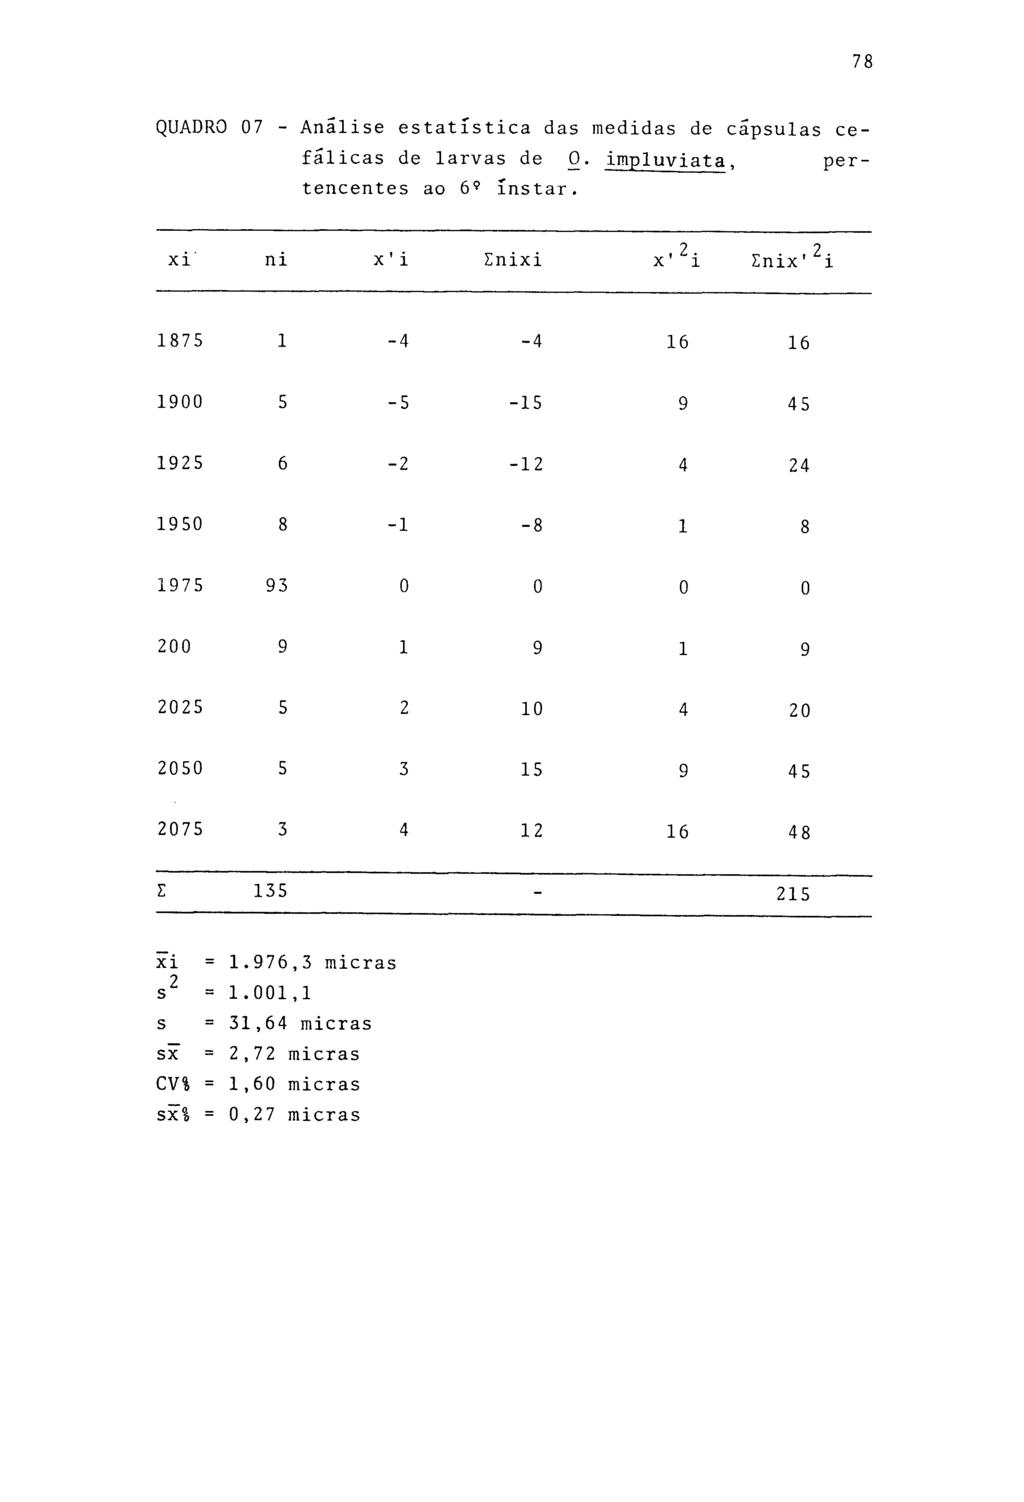 78 QUADRO 07 - Analise estatística das medidas de cápsulas cefálicas de larvas de 0. impluviata, pertencentes ao 6 9 instar.